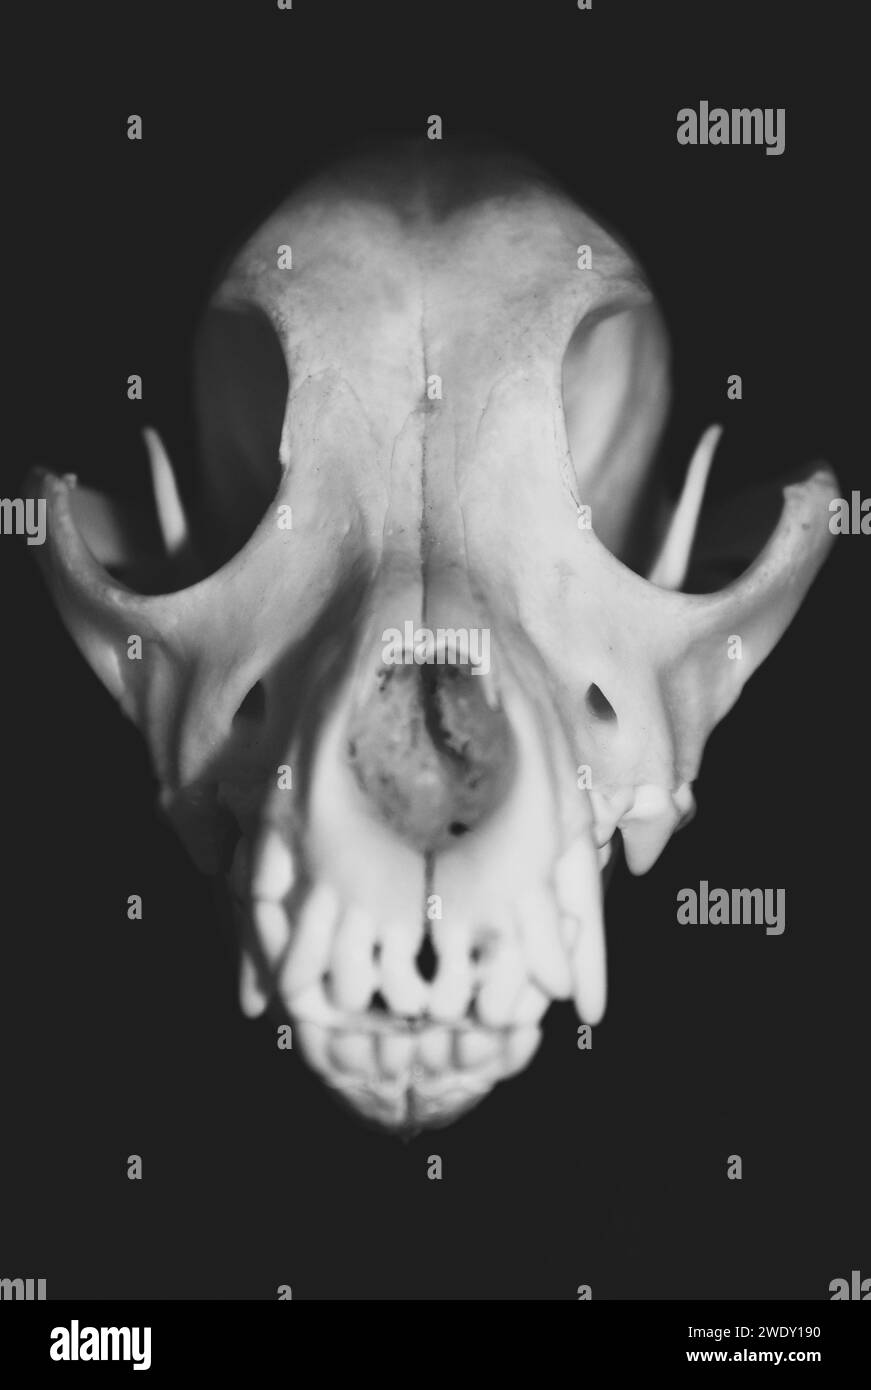 Cerca de un cráneo de perro, visto desde el frente. Fotografía en blanco y negro. Muestra del museo Canis lupus familiaris. Foto de stock